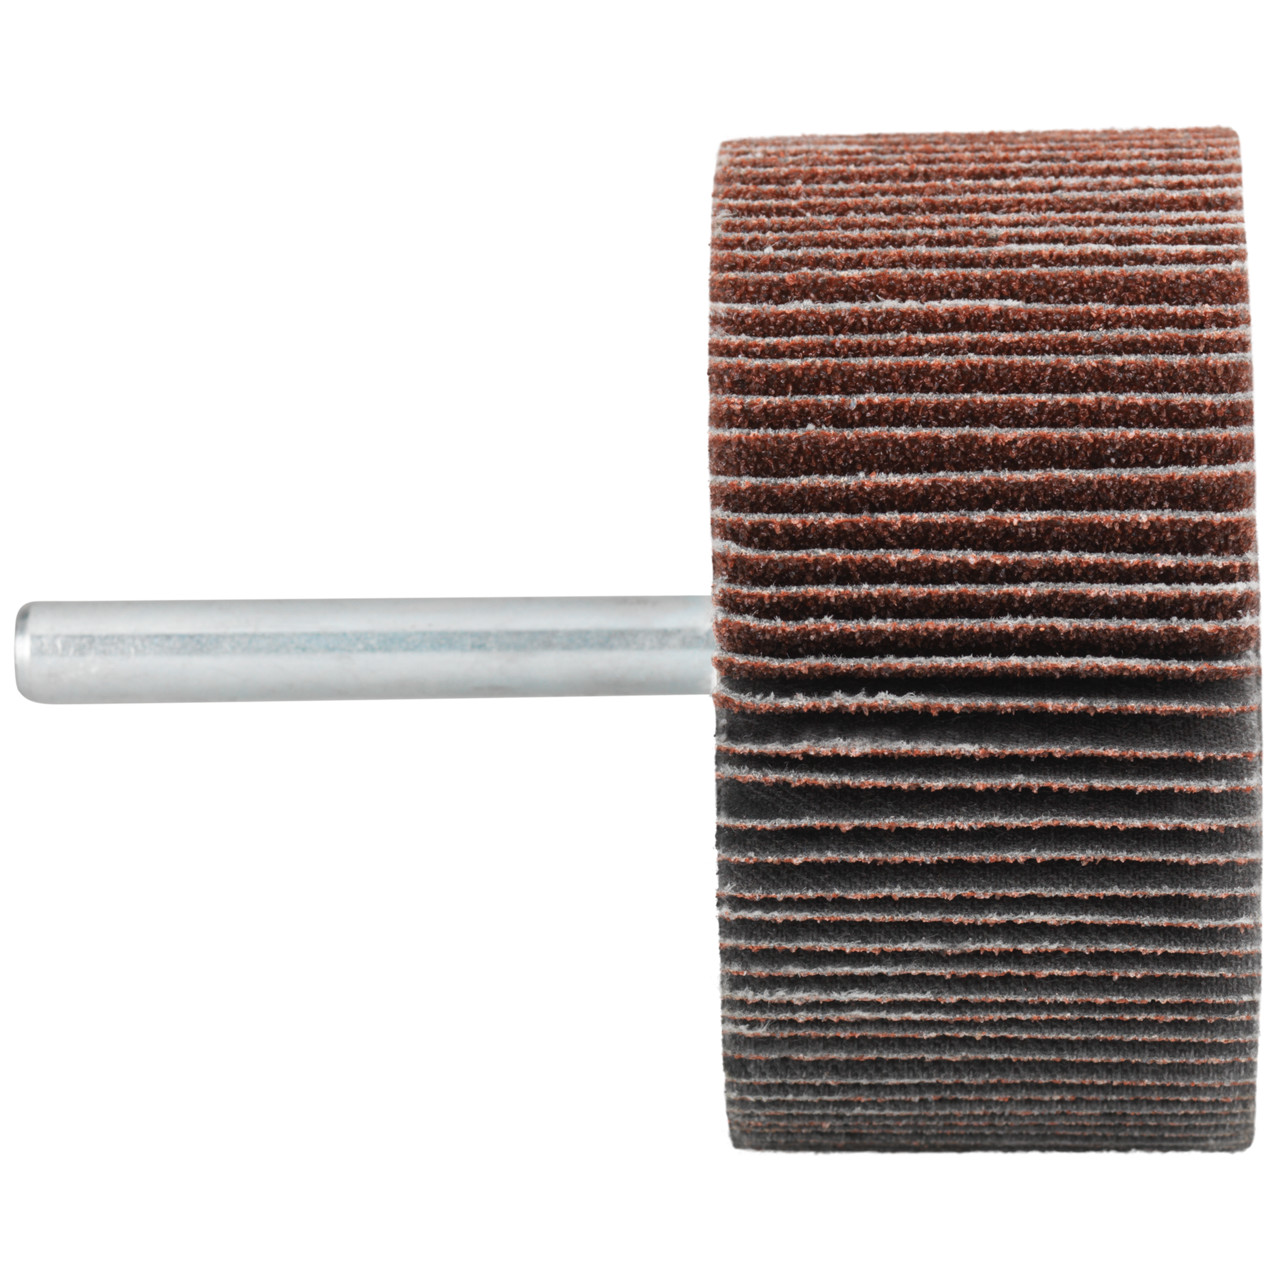 Tyrolit A-P01 C X Pennen DxD 30x5 Voor staal, roestvast staal en non-ferrometalen, P80, vorm: 52LA, Art. 909390